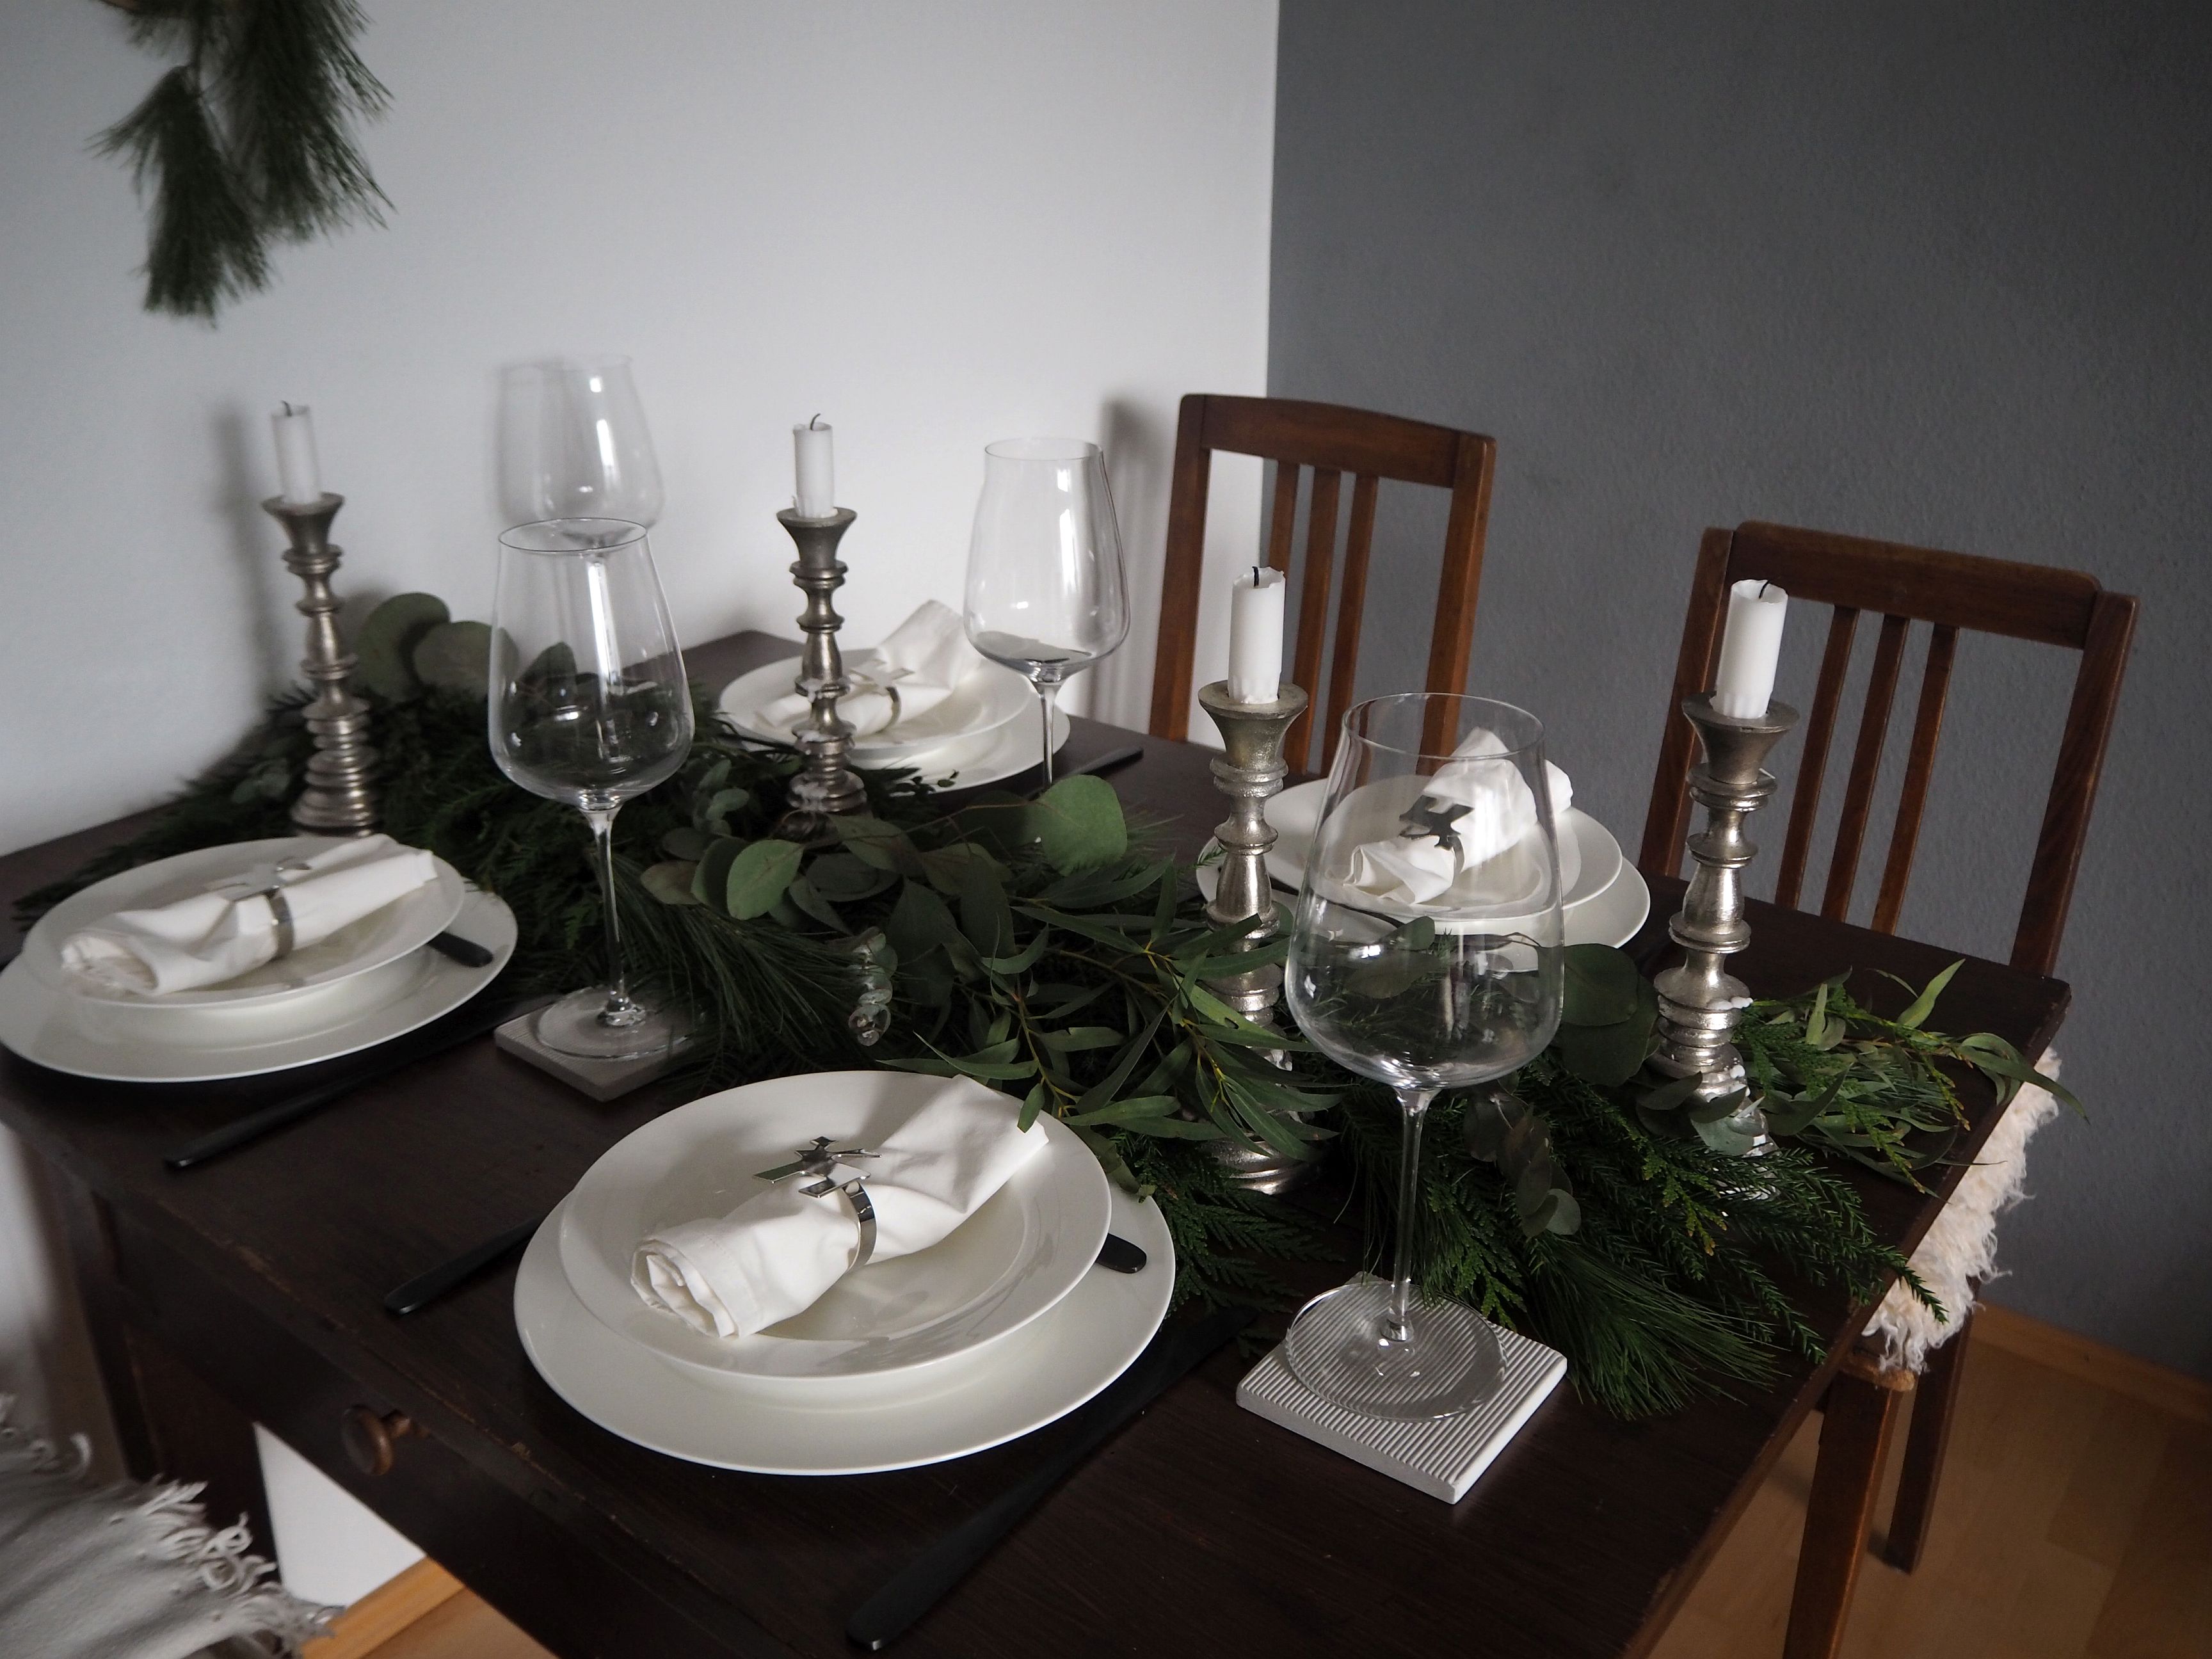 2017-12-skoen-och-kreativ-tischdeko-interior-schlichtes-skandinavisches-tablesetting-weihnachten (3)